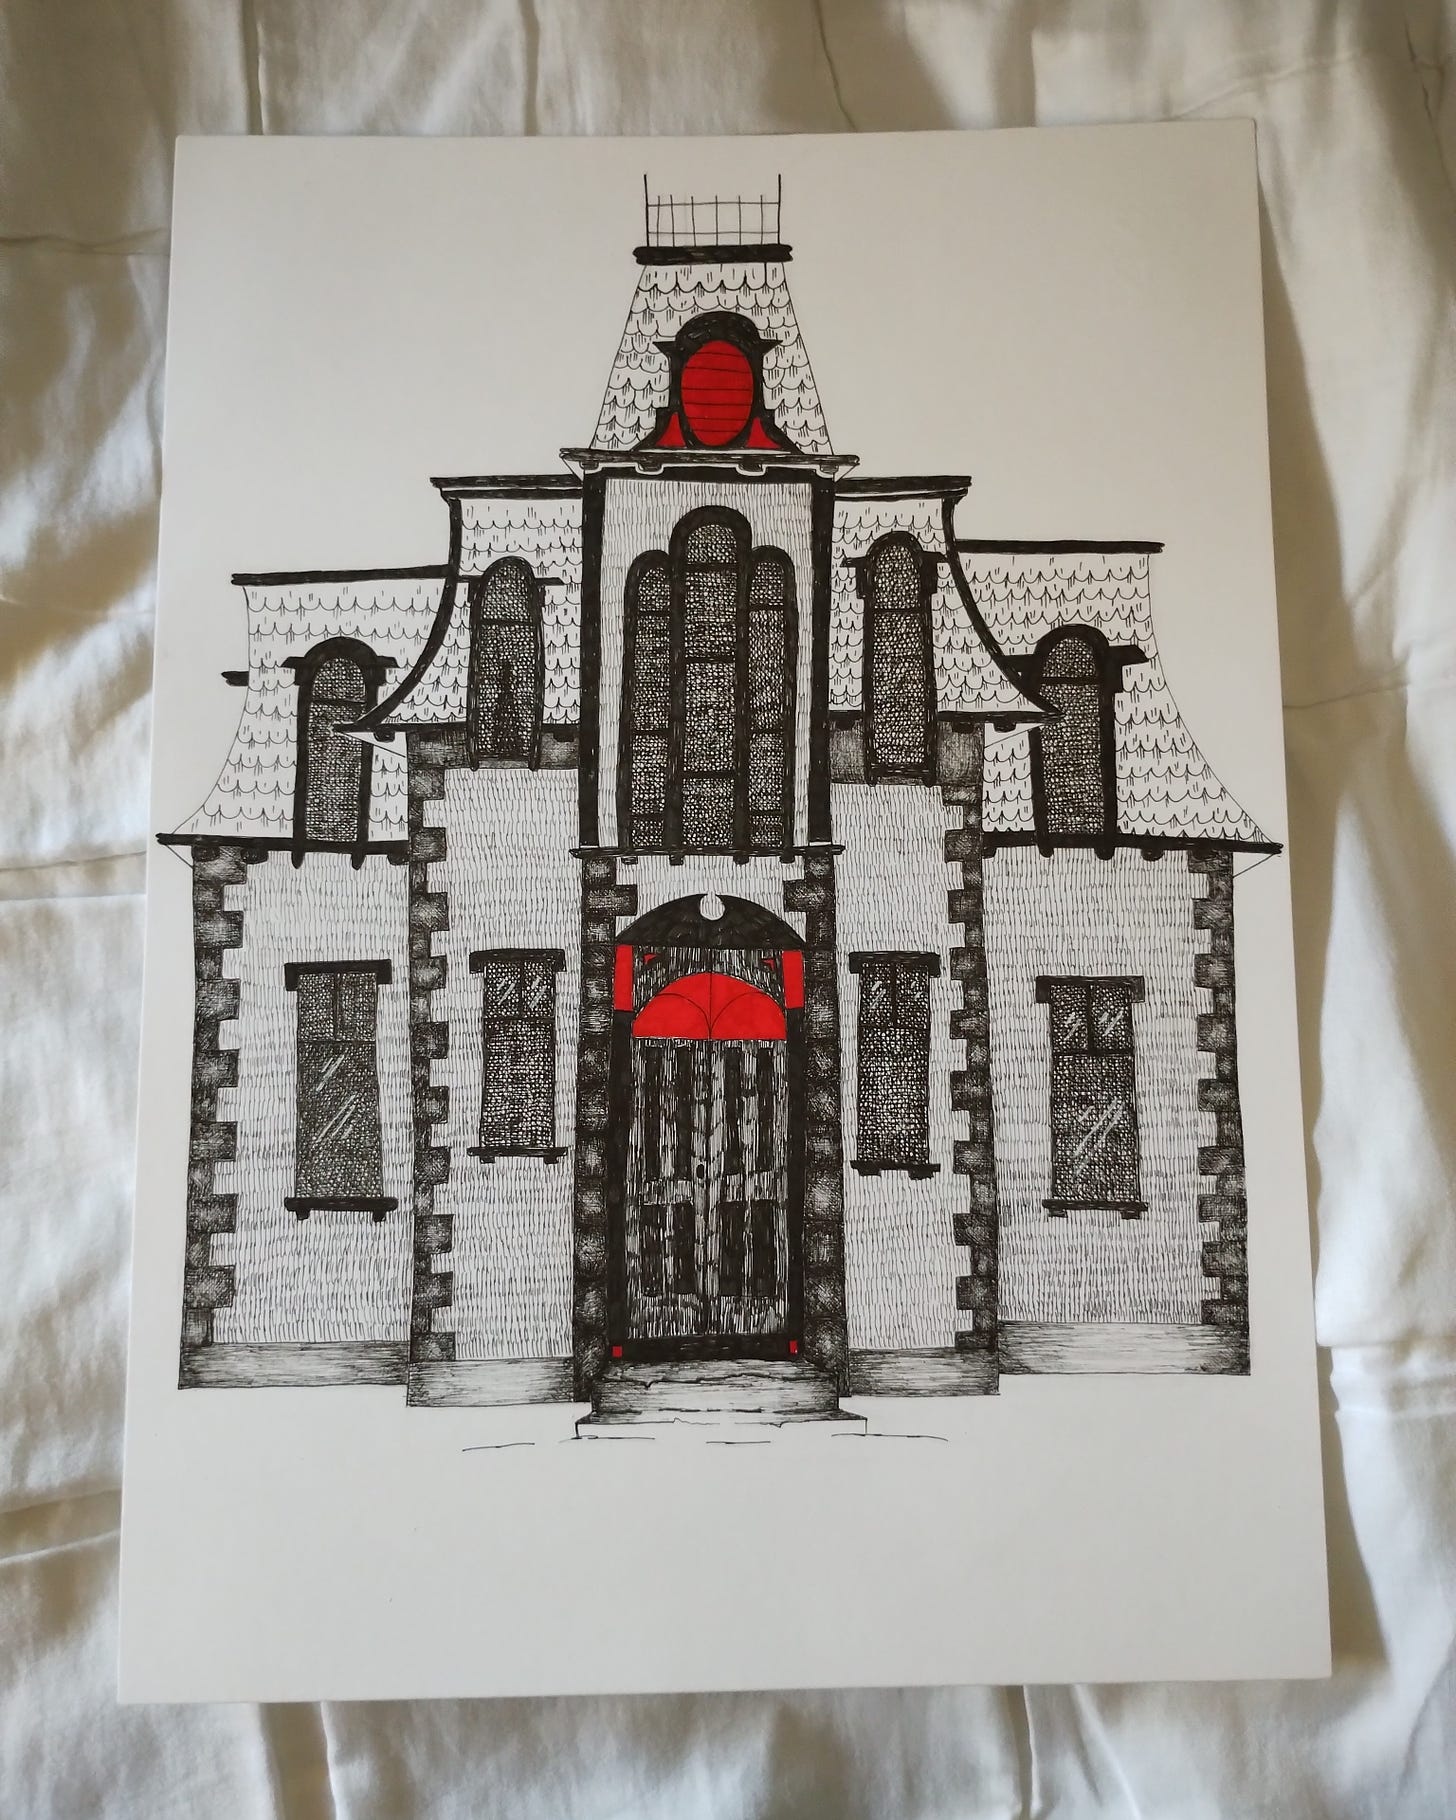 Foto di un disegno realizzato a penna di una casa vittoriana. è in bianco e nero, tranne alcuni dettagli della porta e una finestra che sono colorati di rosso. in una delle finestre si intravede una sagoma.